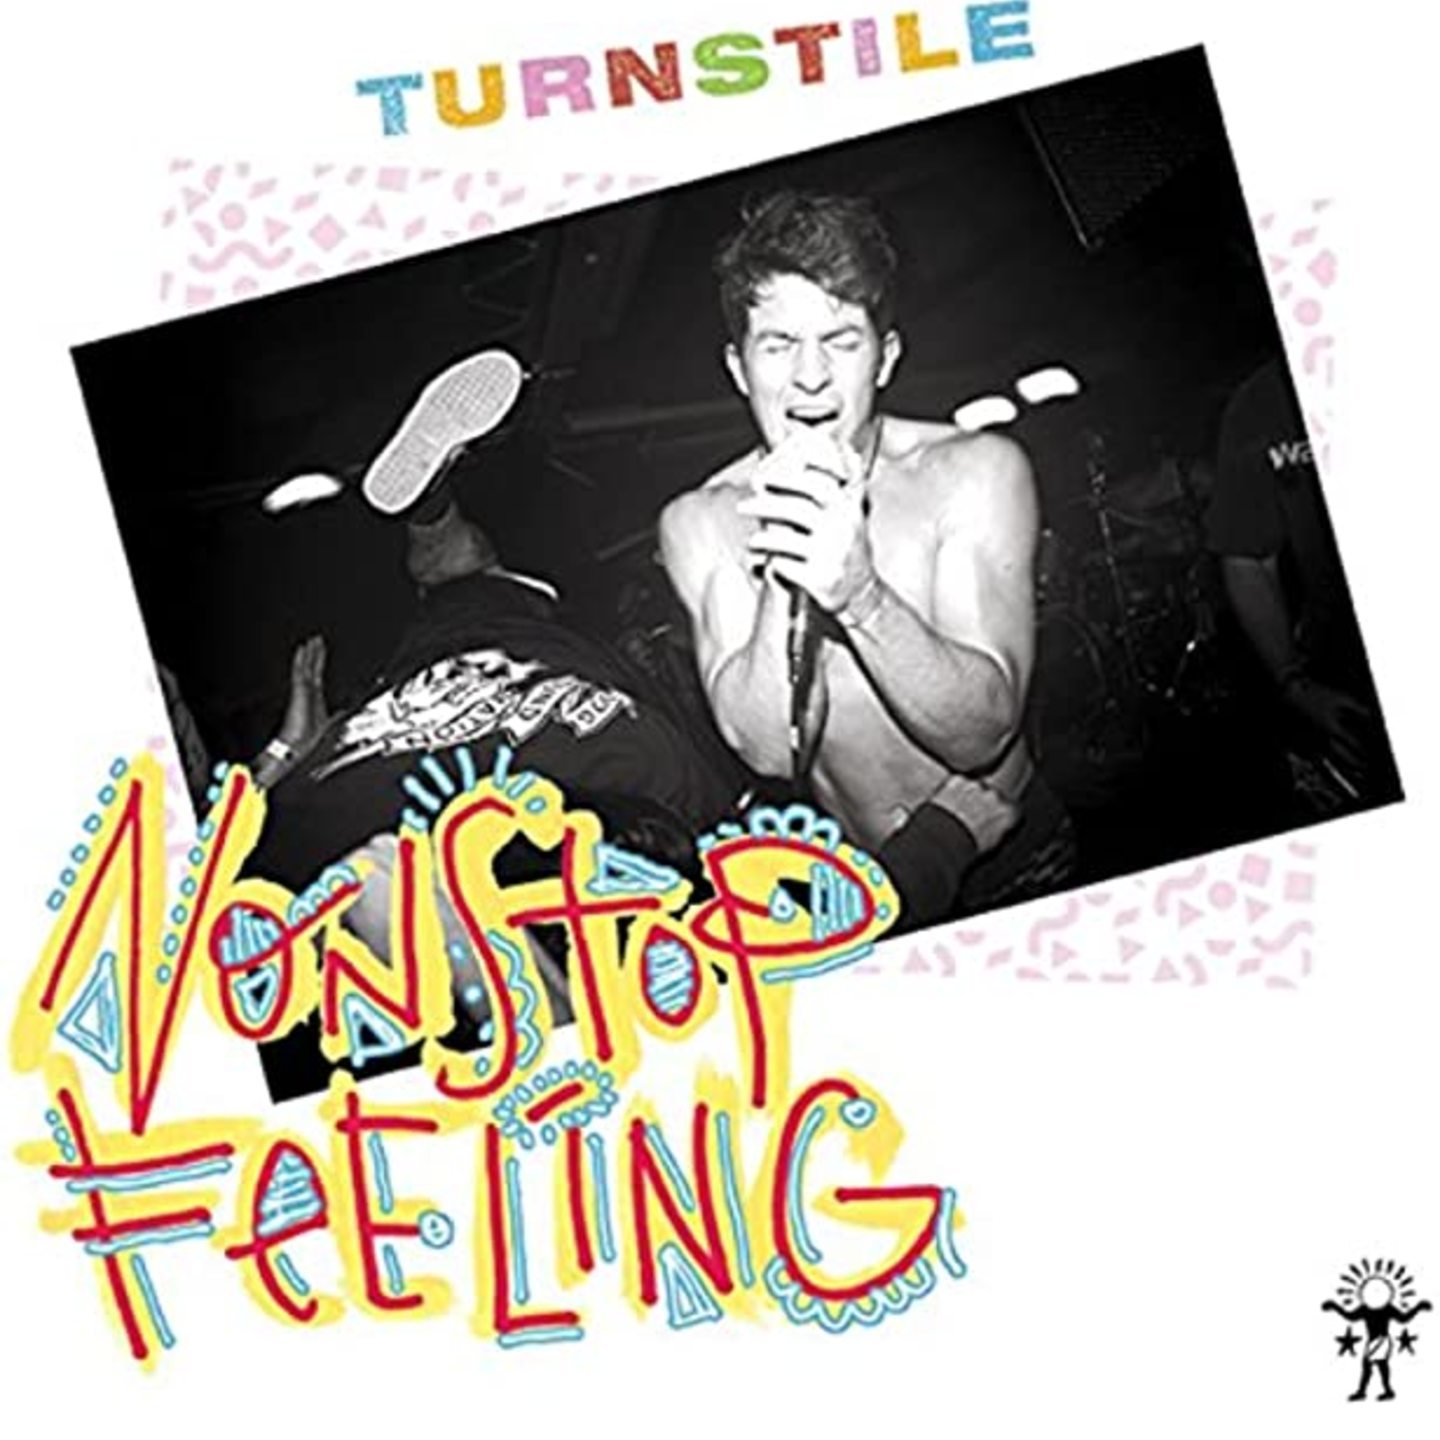 TURNSTILE - Nonstop Feeling LP